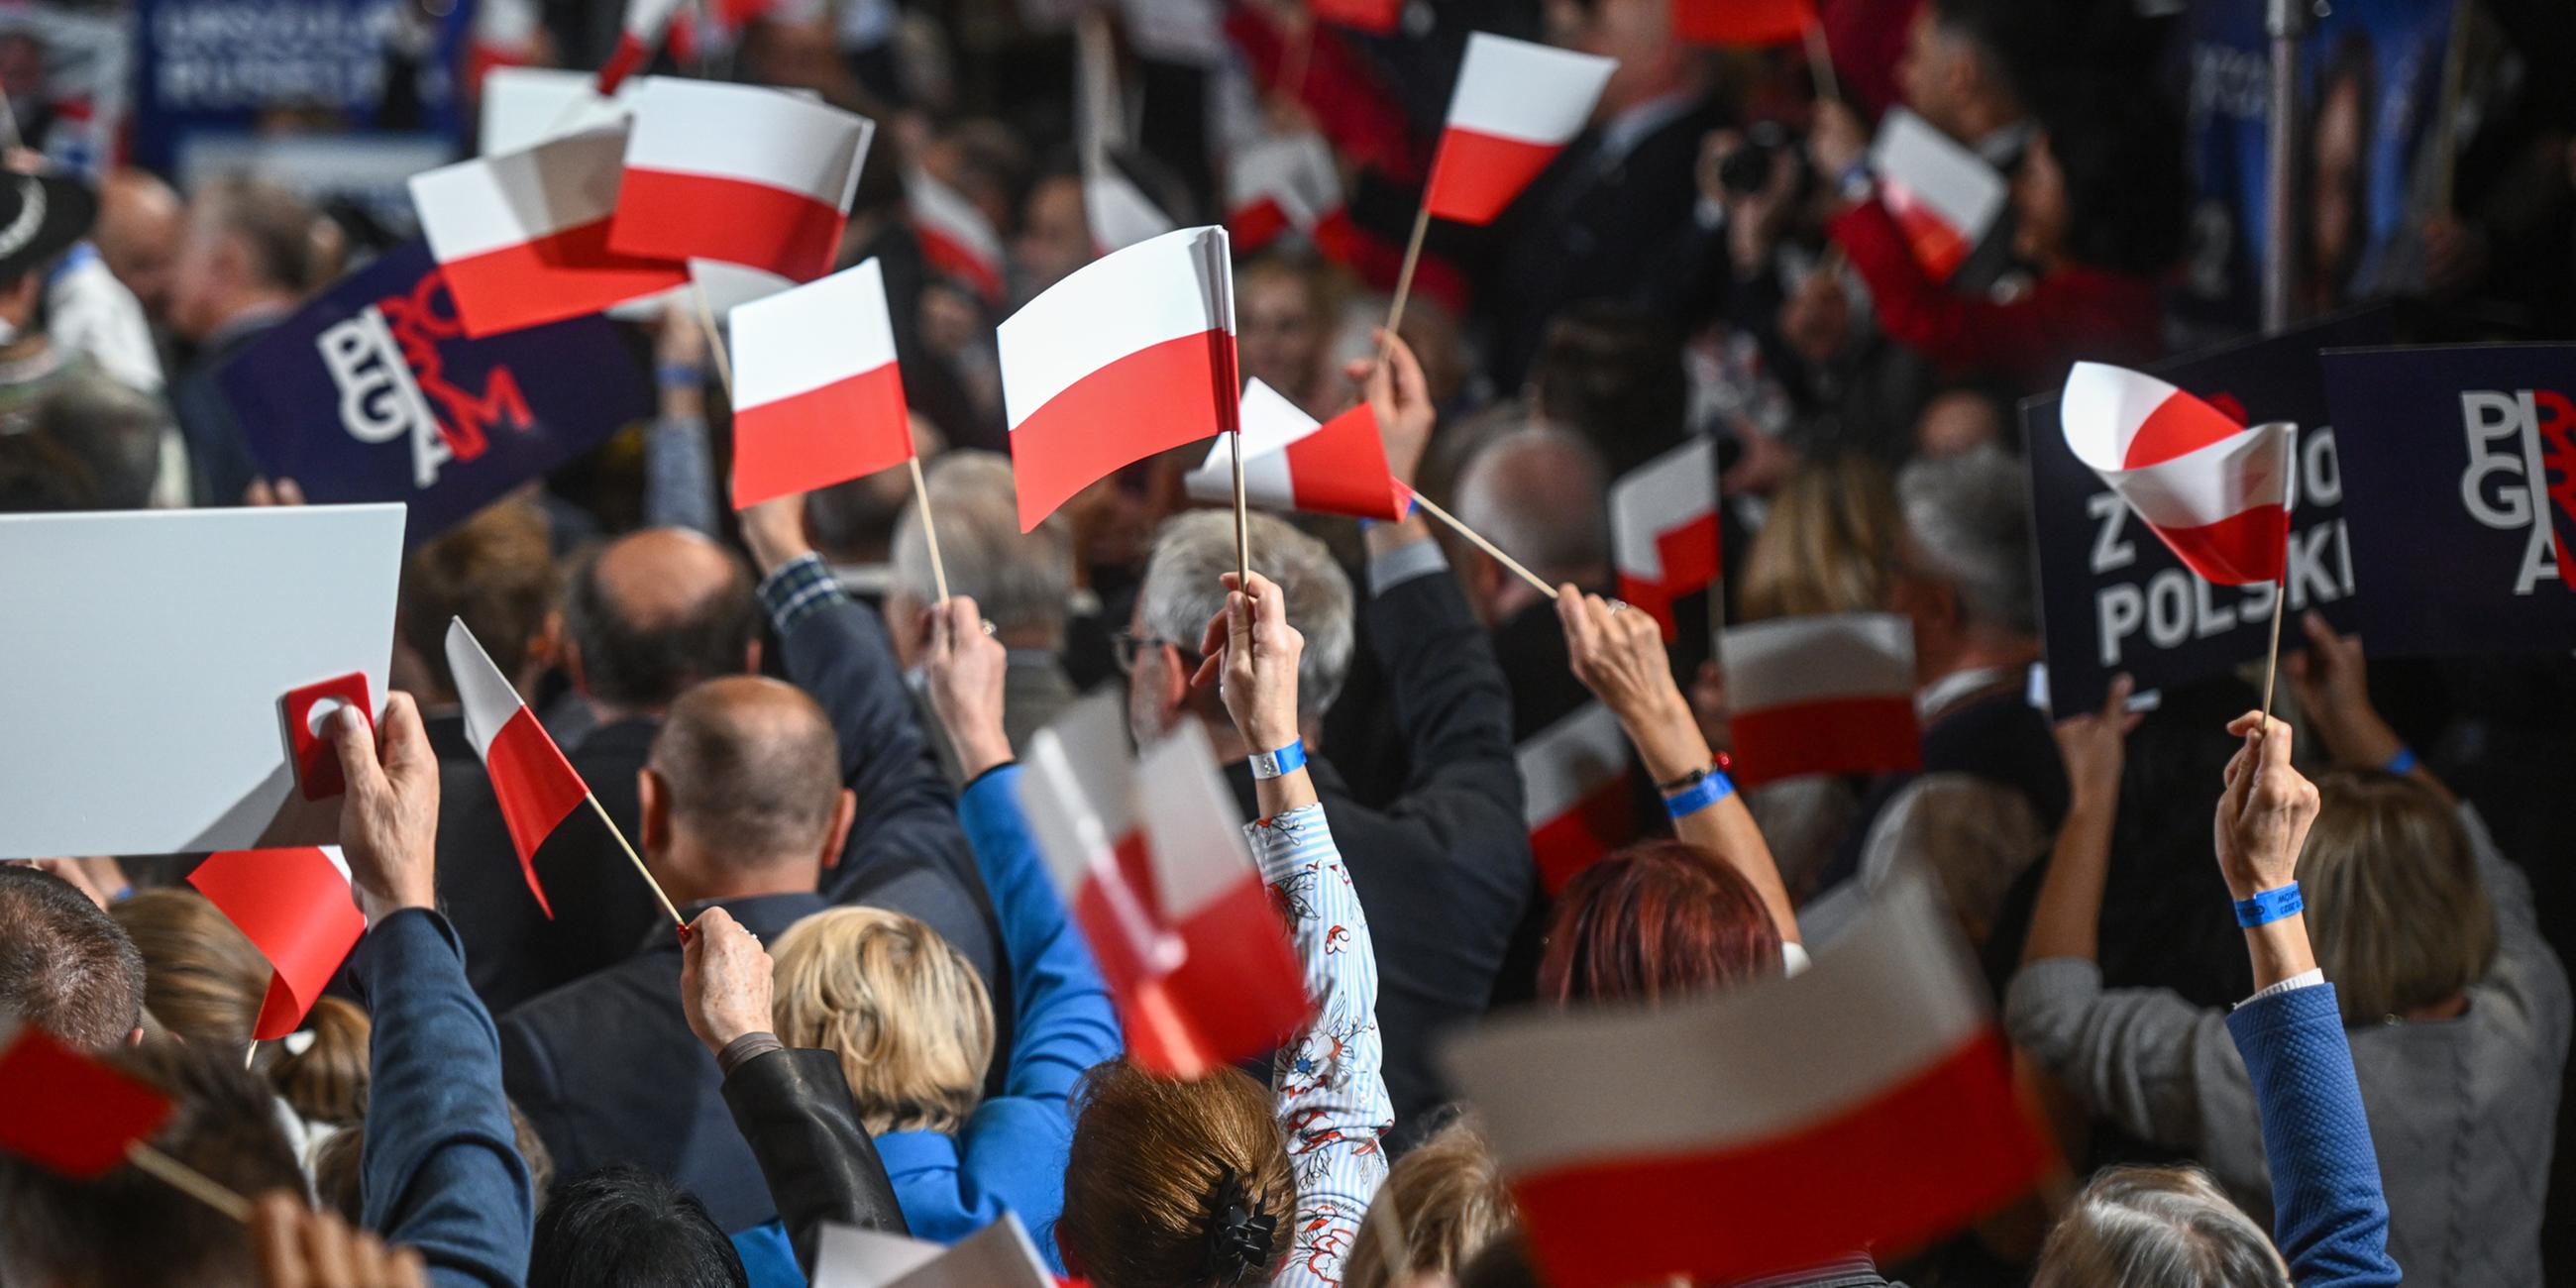  Anhänger und Abgeordnete der Partei Recht und Gerechtigkeit halten während einer Wahlkampfveranstaltung in Krakau am 11.10.2023 Transparente.